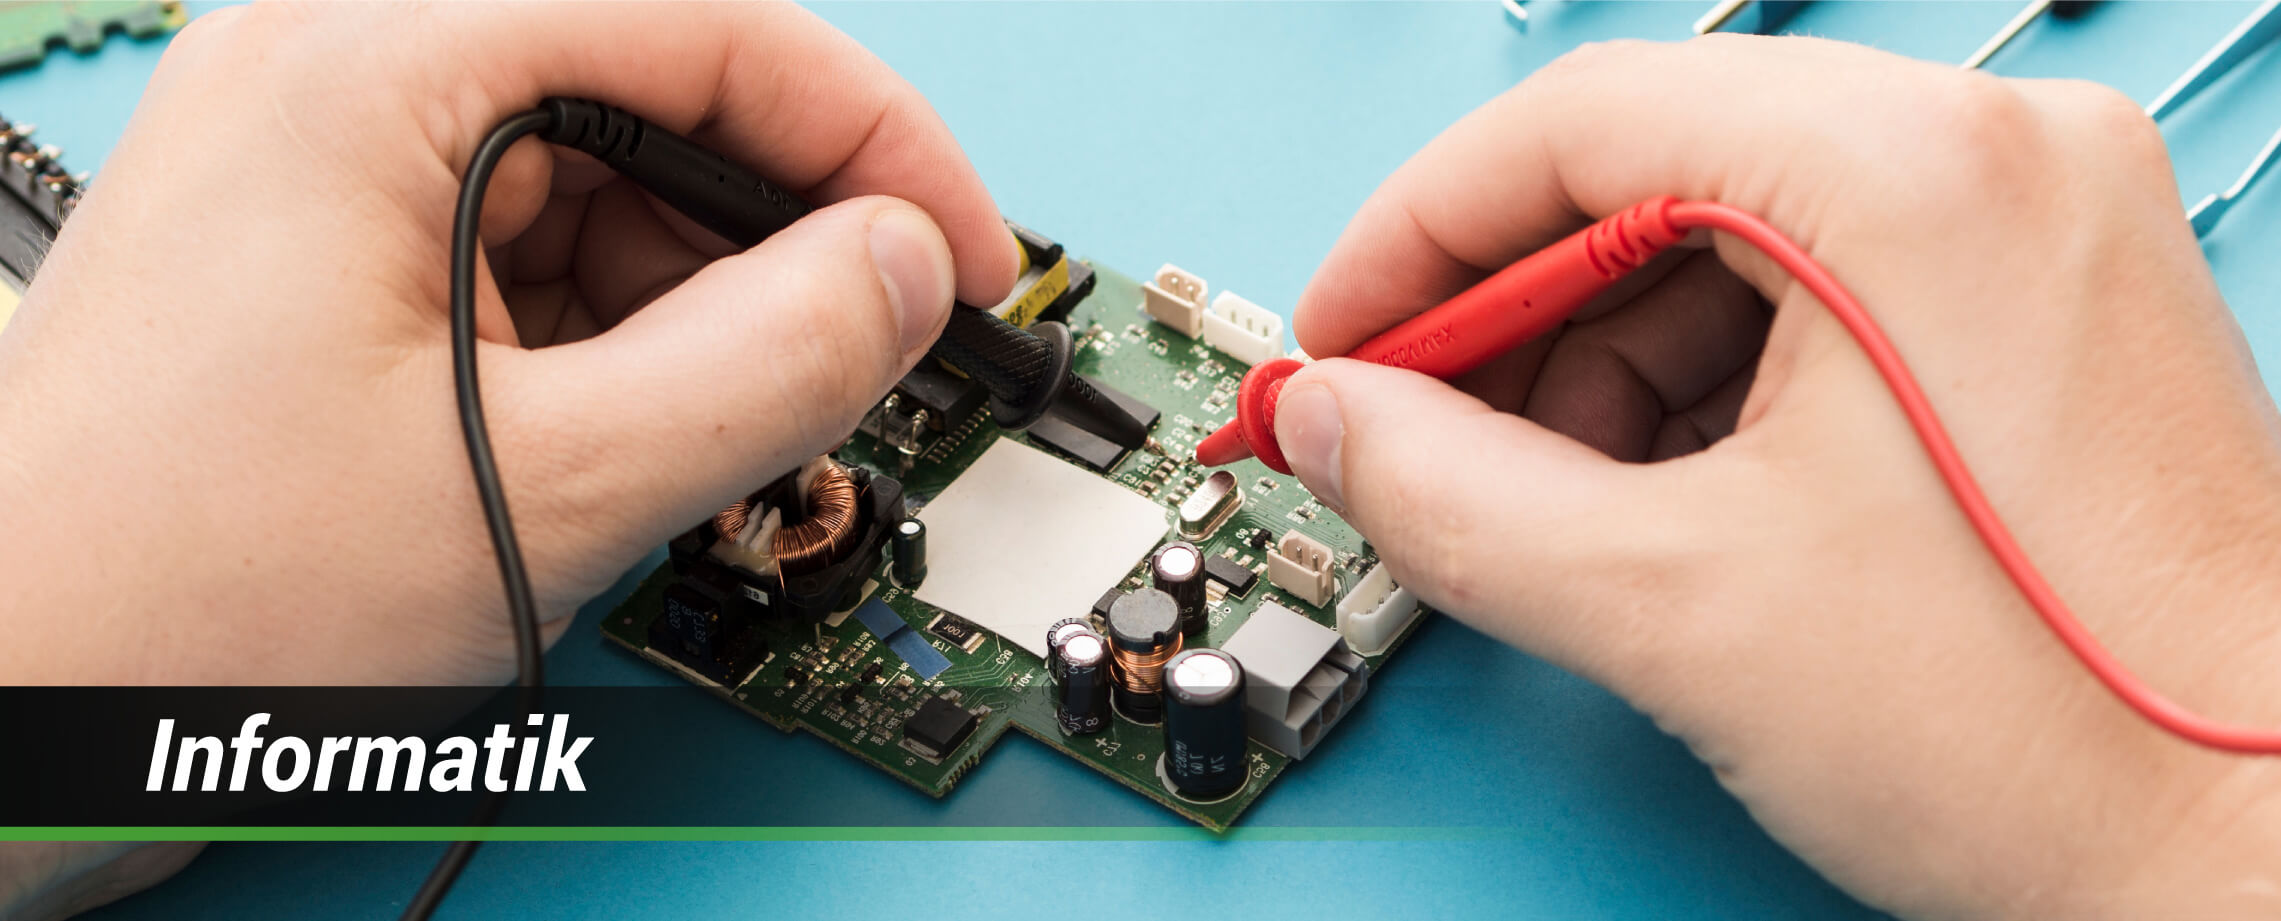 Beste elektronische Produkte und Zubehör für Raspberry Pi, Arduino, micro:bit, Asus Tinker Board, 3D-Druck und mehr.